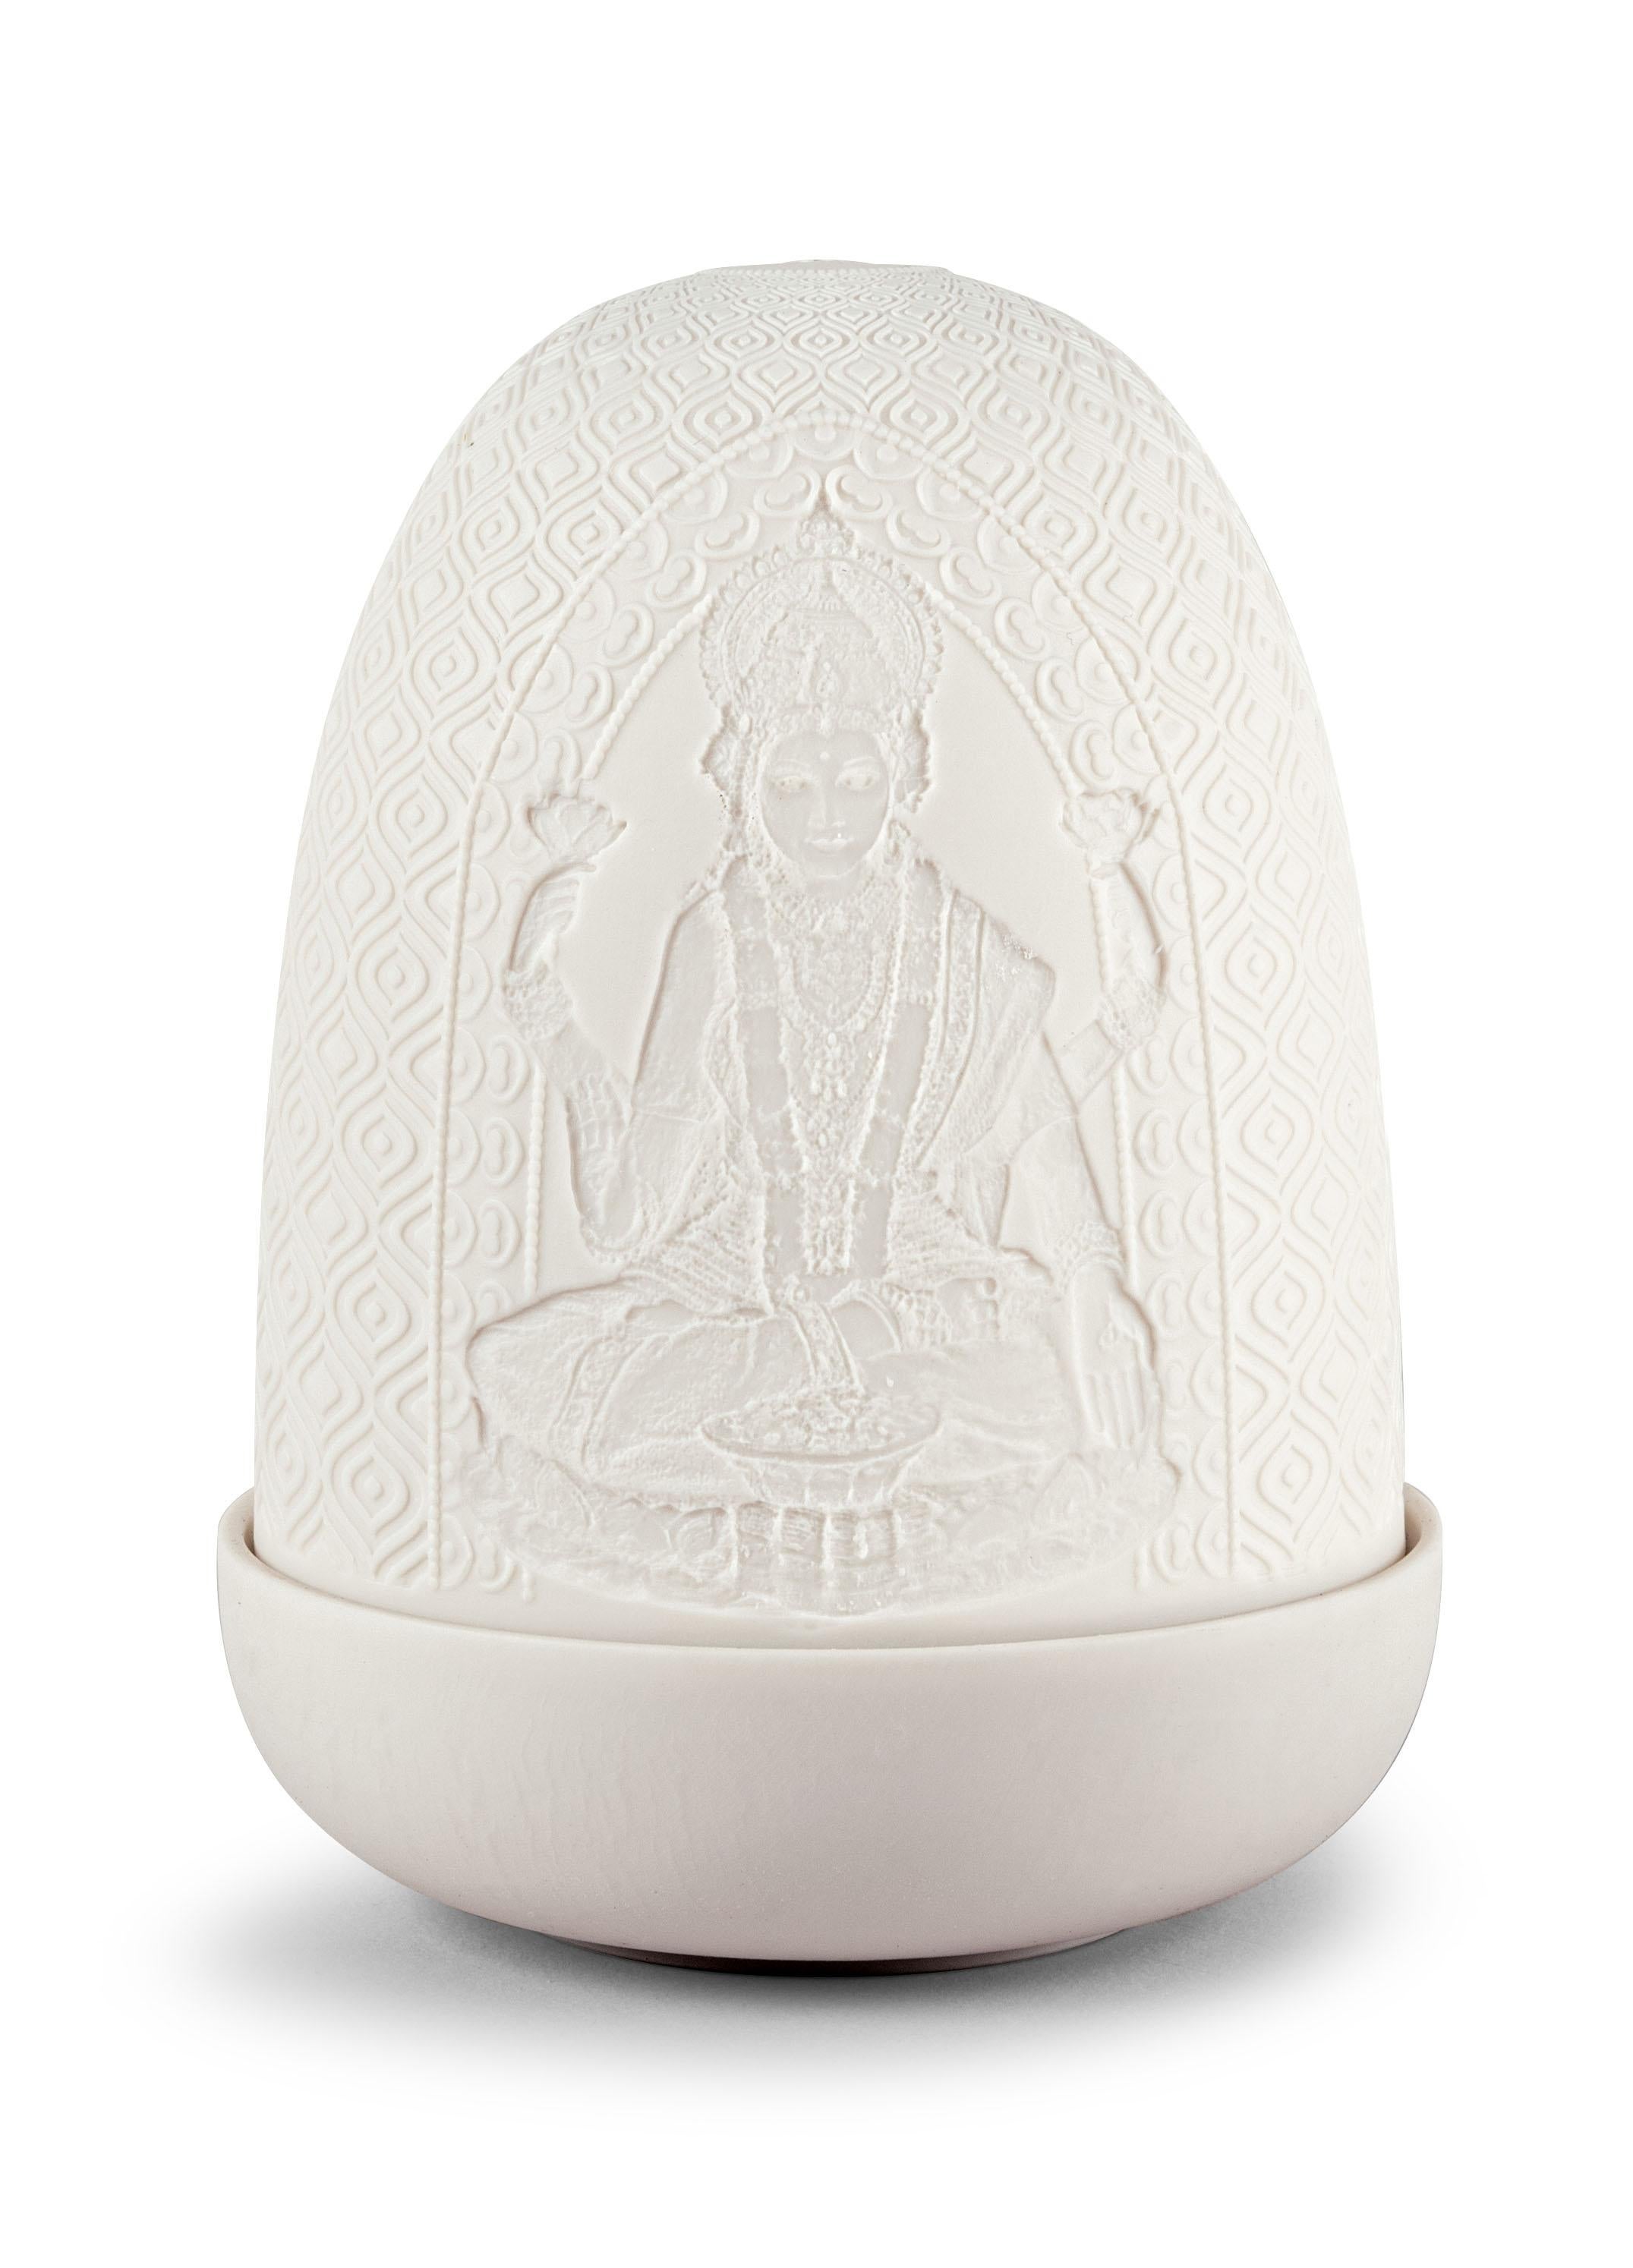 Lampe en porcelaine de la collection Dome représentant Ganesha et Lakshmi, deux des dieux les plus vénérés d'Inde. Cette nouvelle lampe en porcelaine présente des gravures artisanales de deux des dieux les plus vénérés d'Inde. D'un côté, on peut